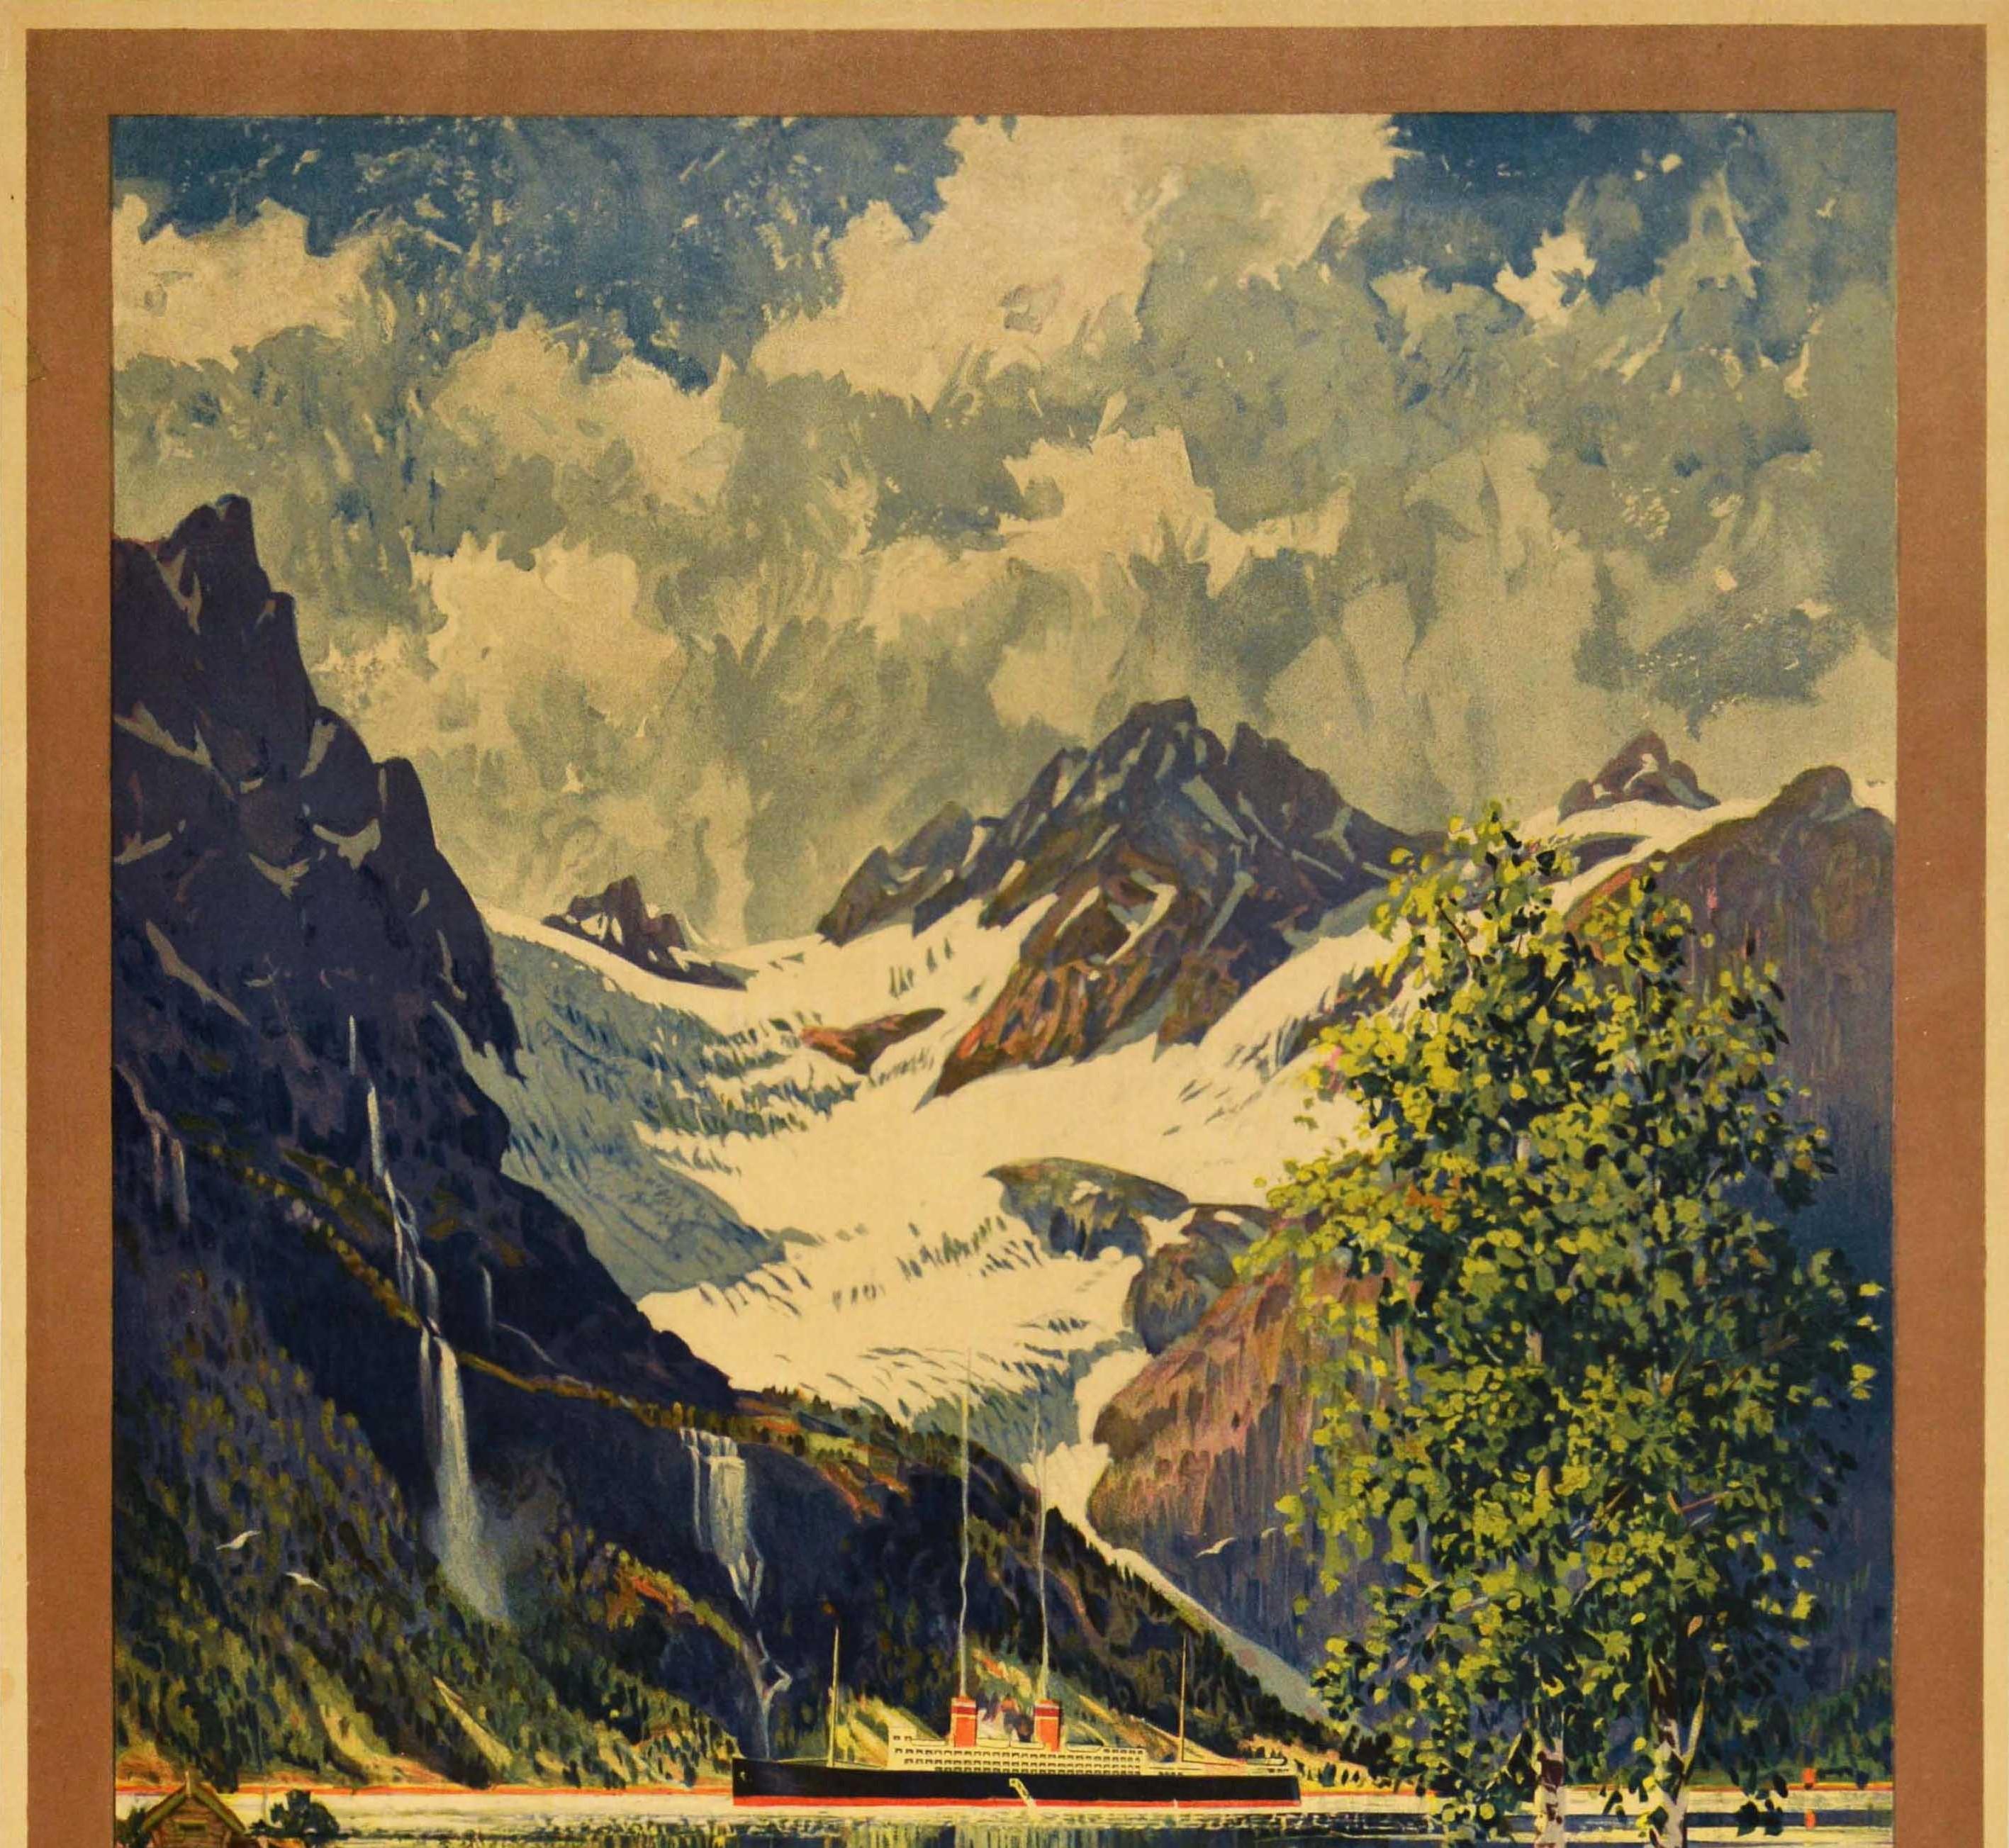 Affiche publicitaire originale pour les voyages en train en Norvège, saison d'été juin-septembre, avec une superbe illustration de Benjamin Blessum (1877-1954) représentant un fjord panoramique du paysage norvégien avec un lac au premier plan, des